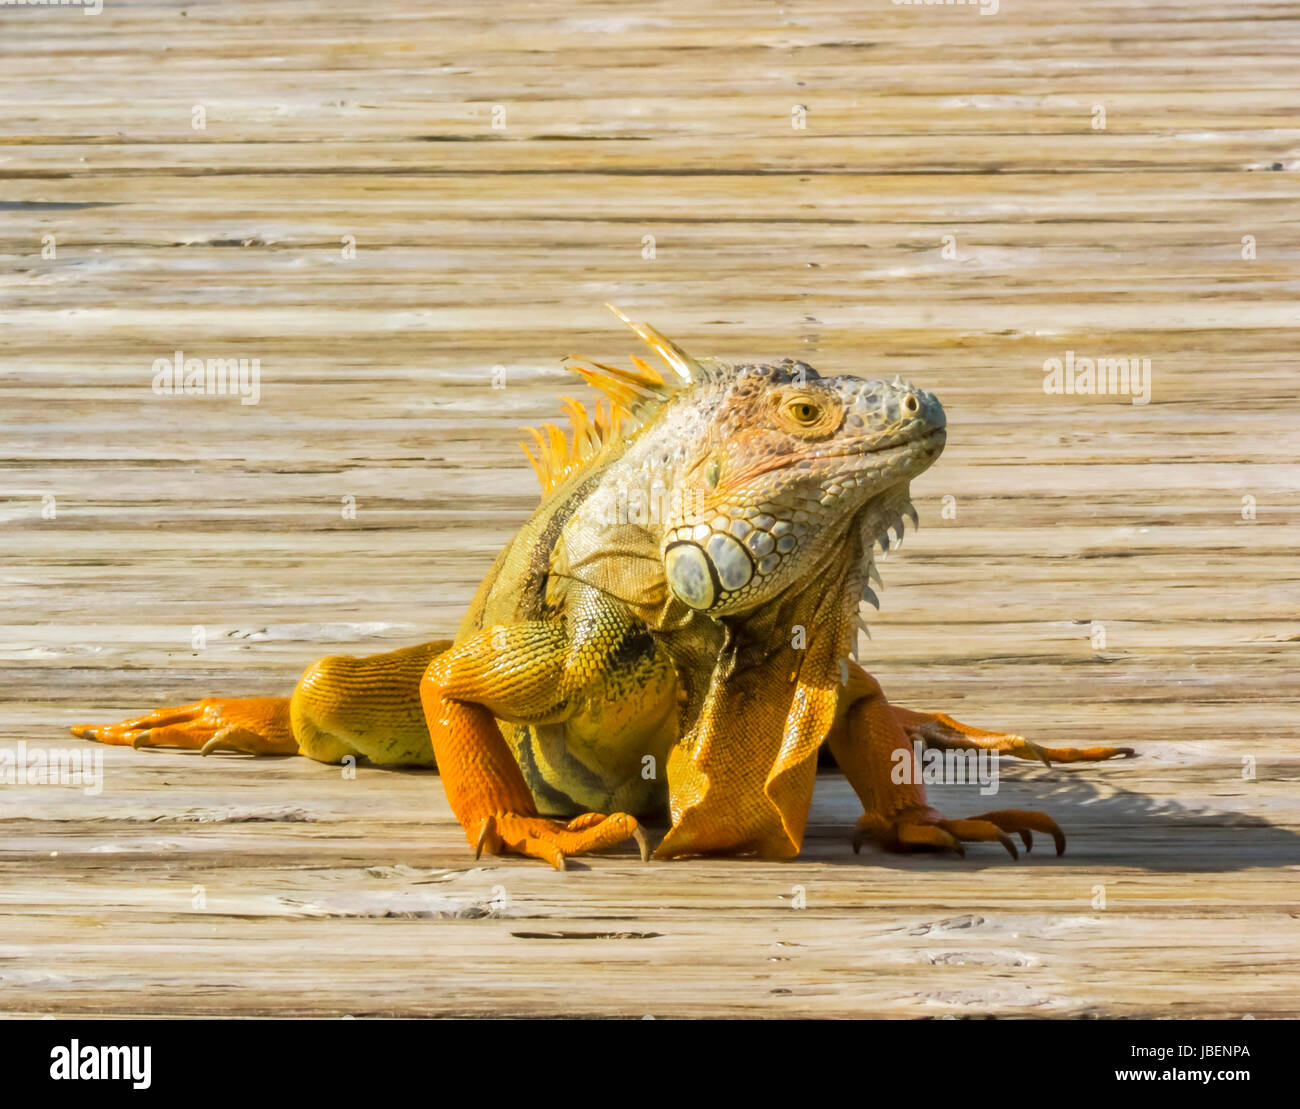 Iguana sunning Stock Photo